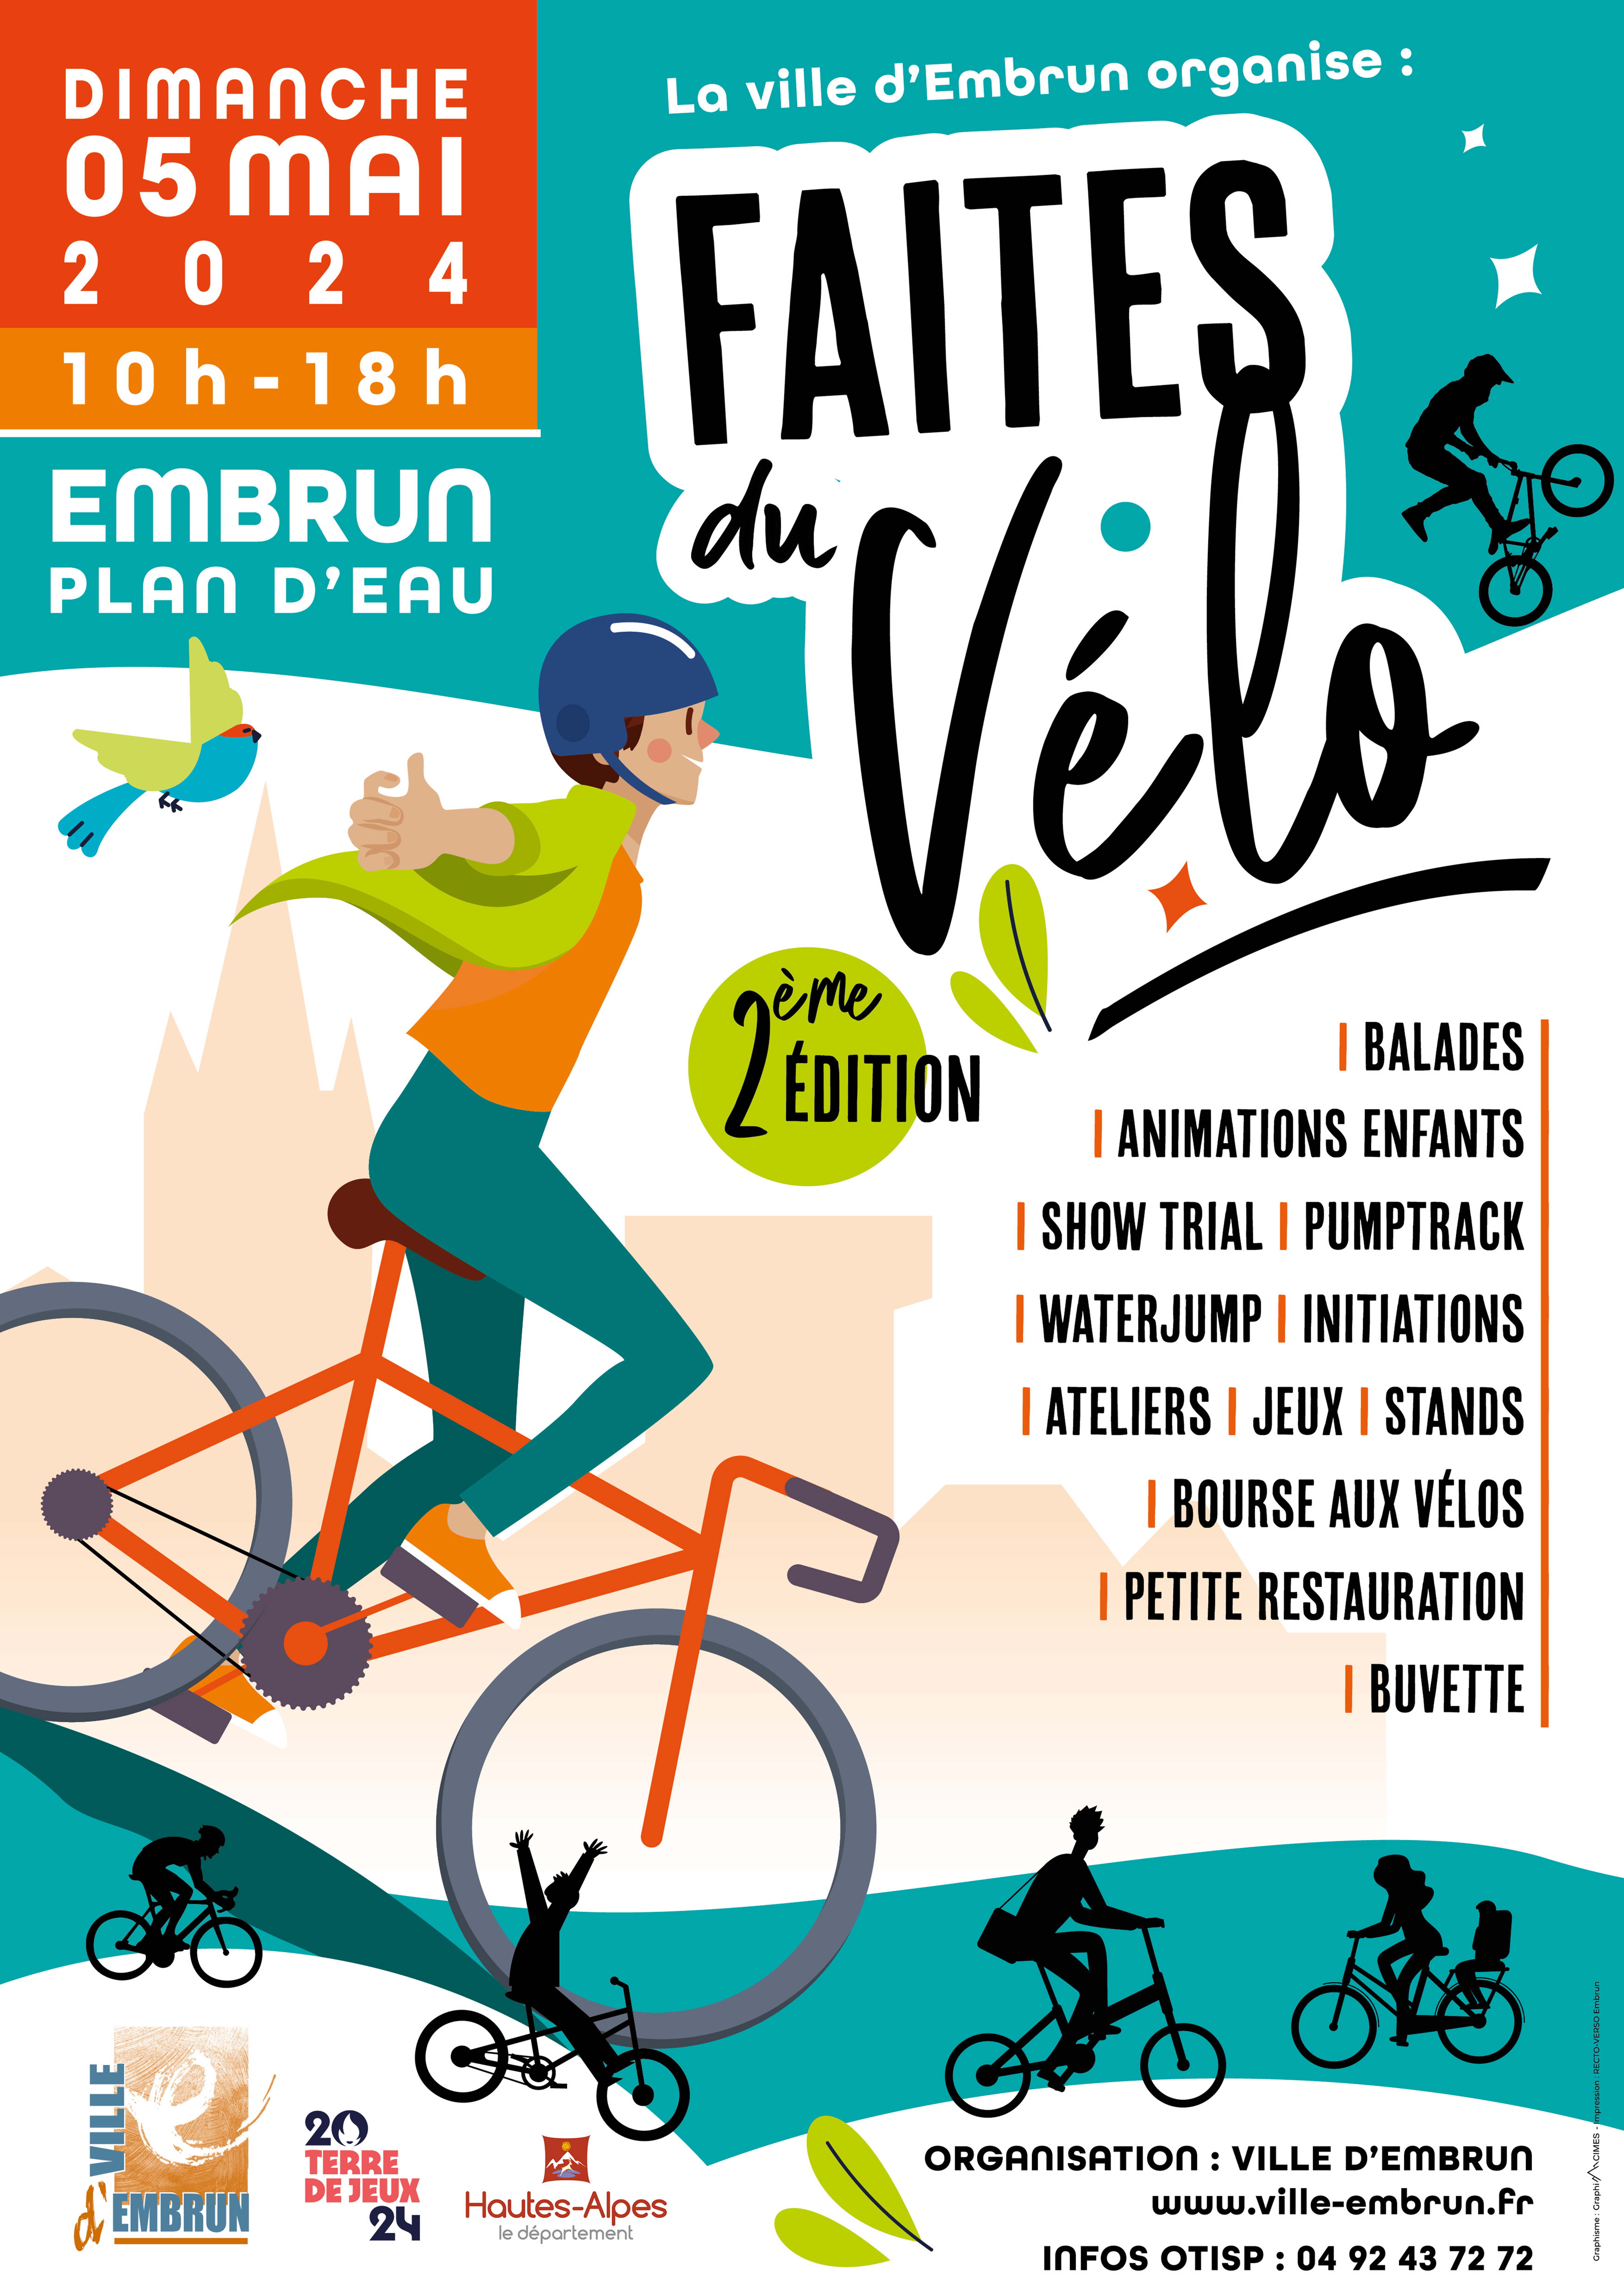 Faites du vélo 2nd edition